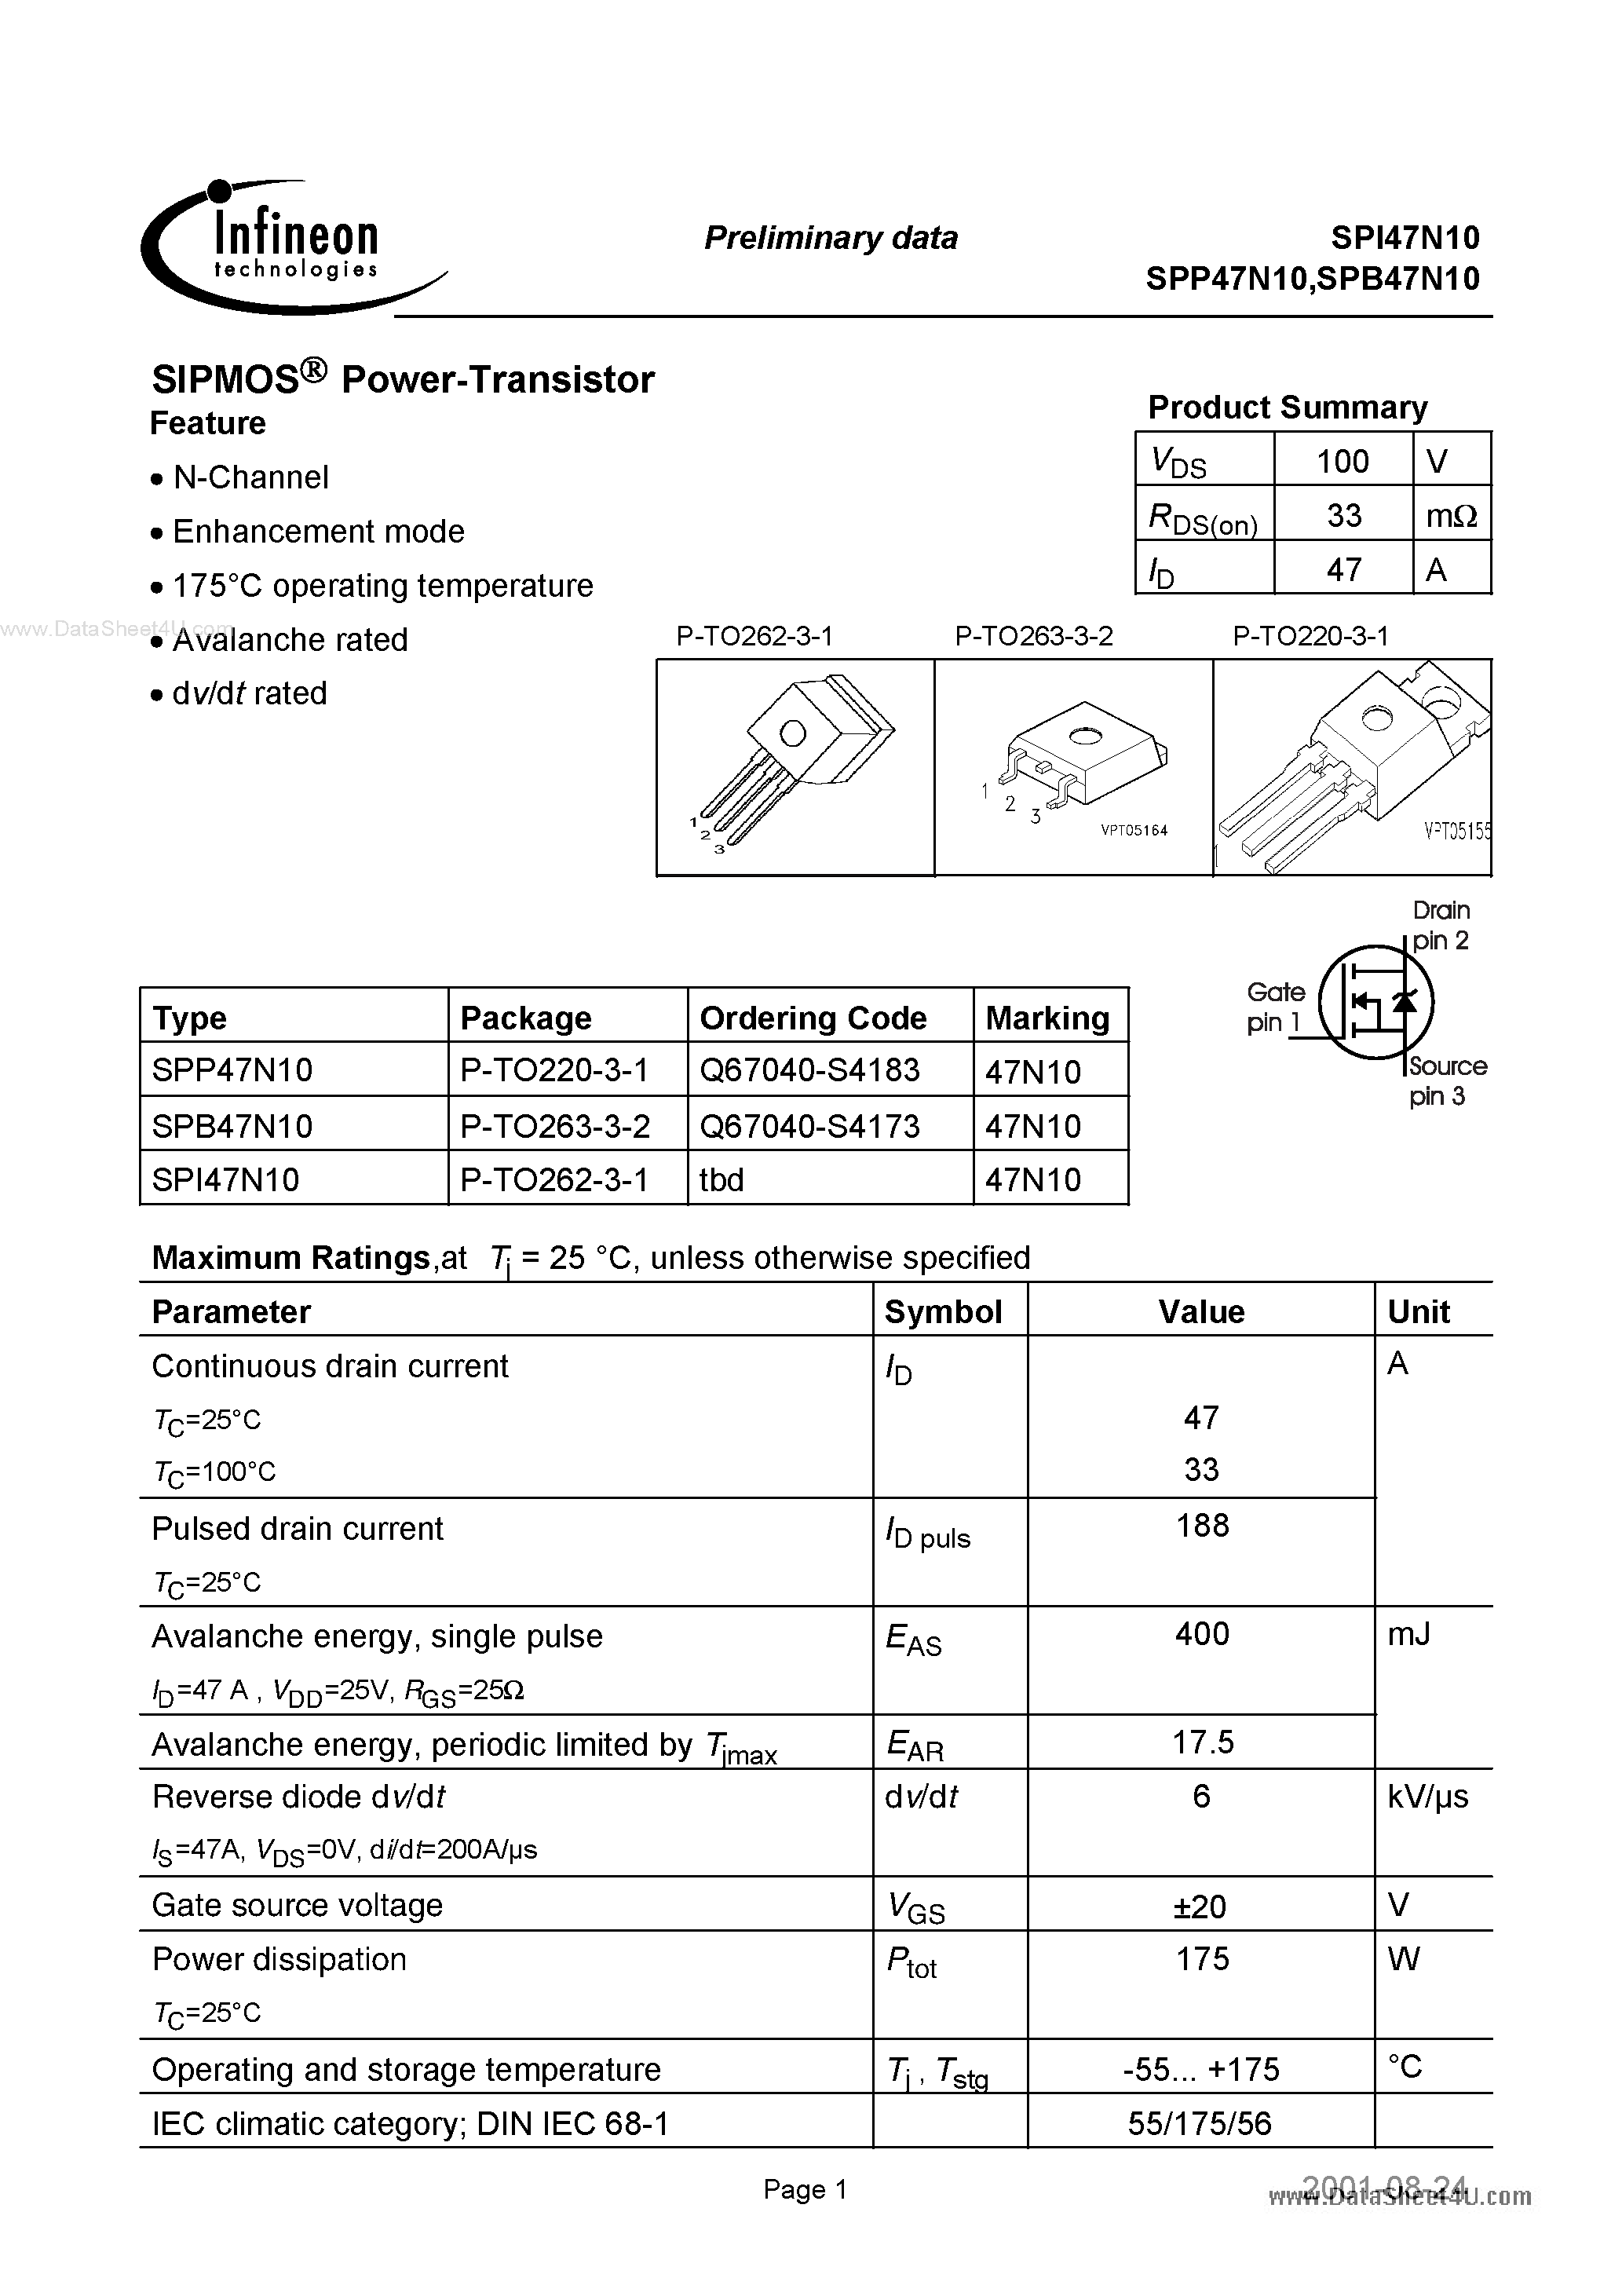 Datasheet SPI47N10 - SIPMOS Power-Transistor page 1